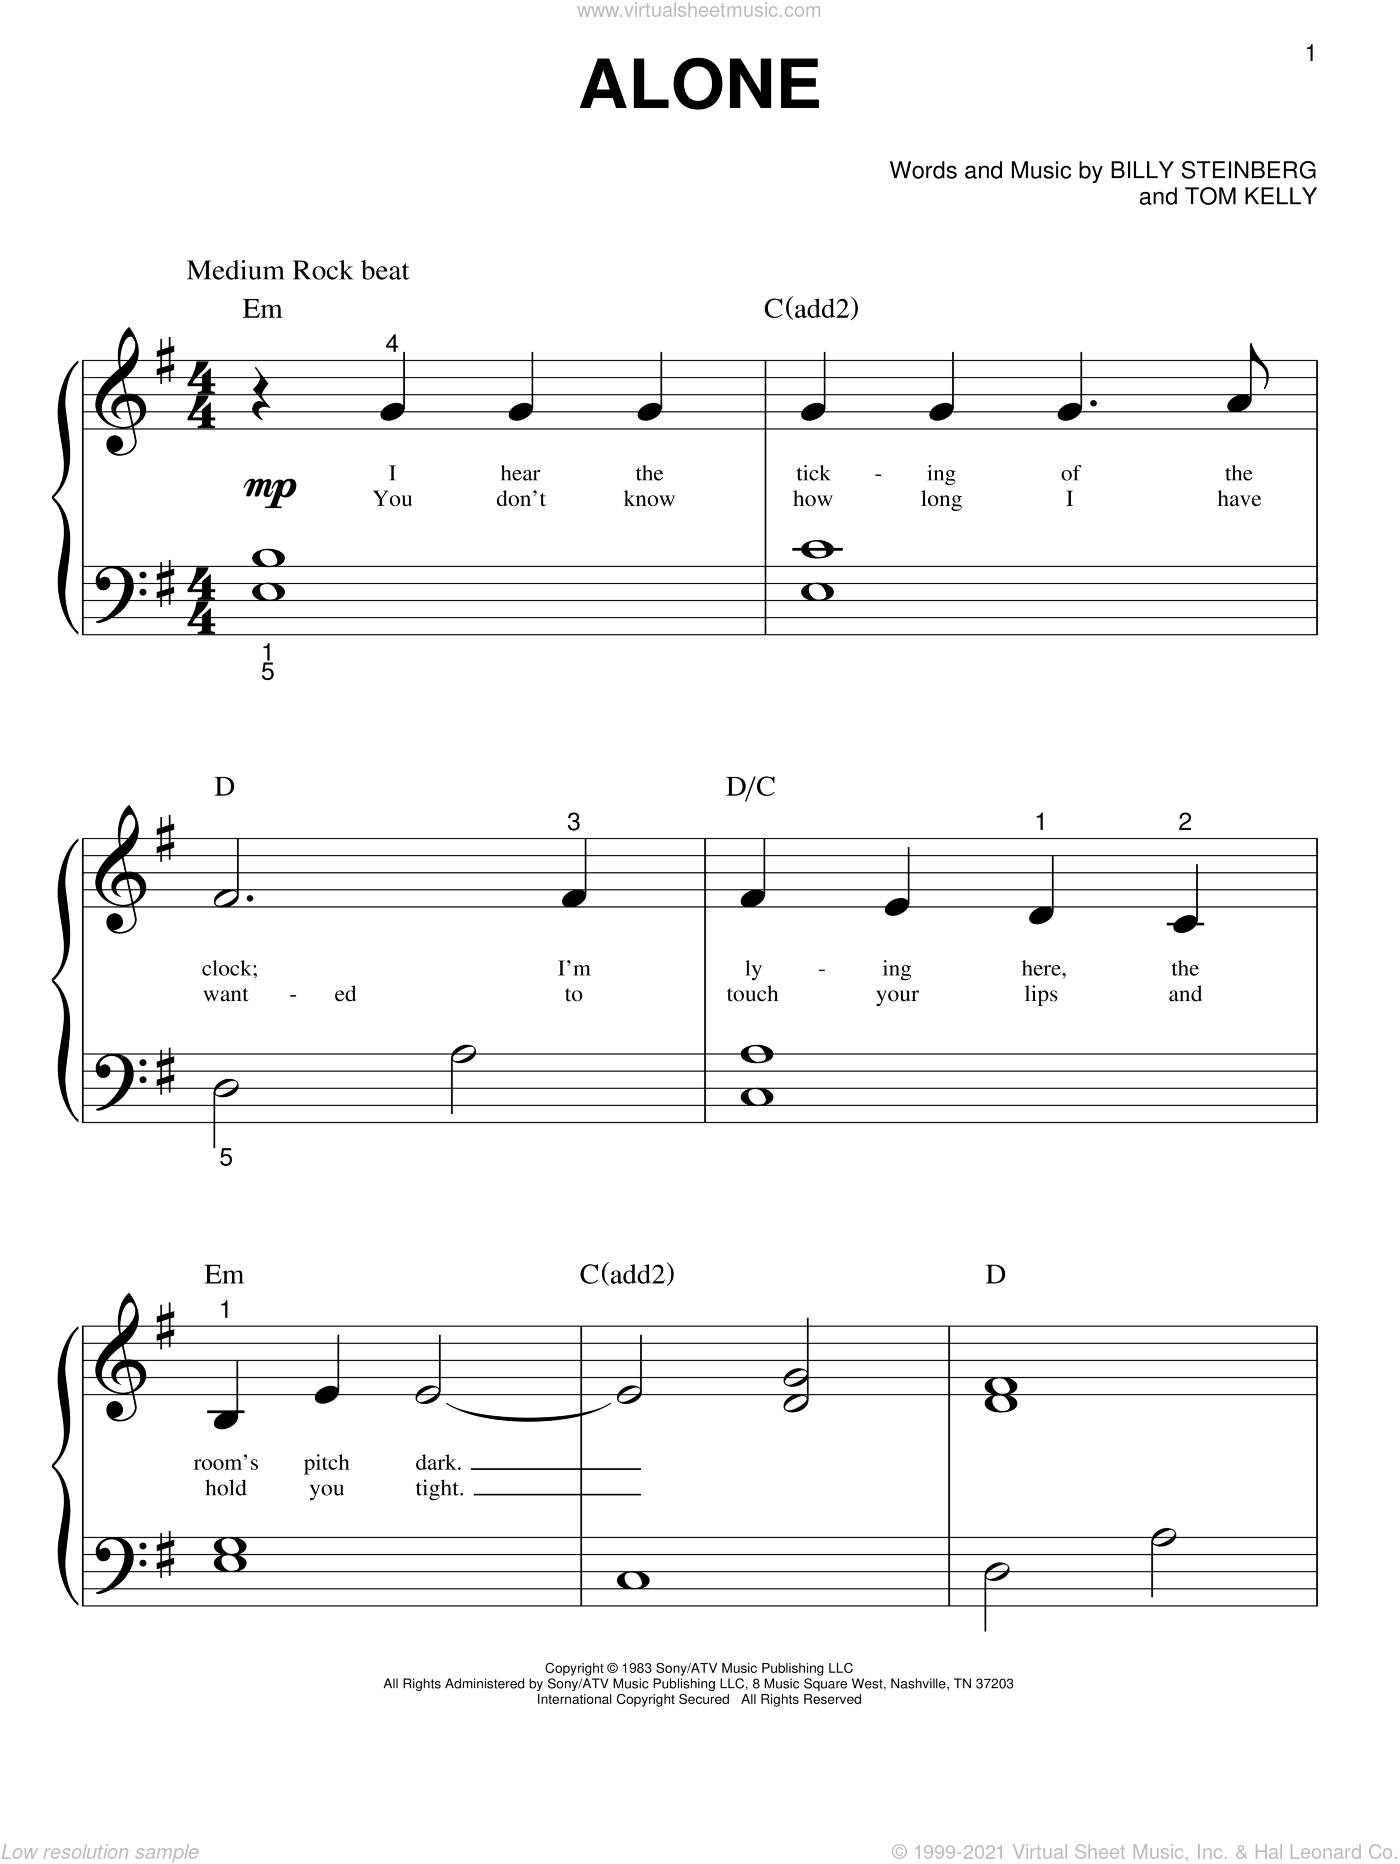 MUSICHELP Alone Again [advanced] Sheet Music (Piano Solo) in E Minor -  Download & Print - SKU: MN0209855